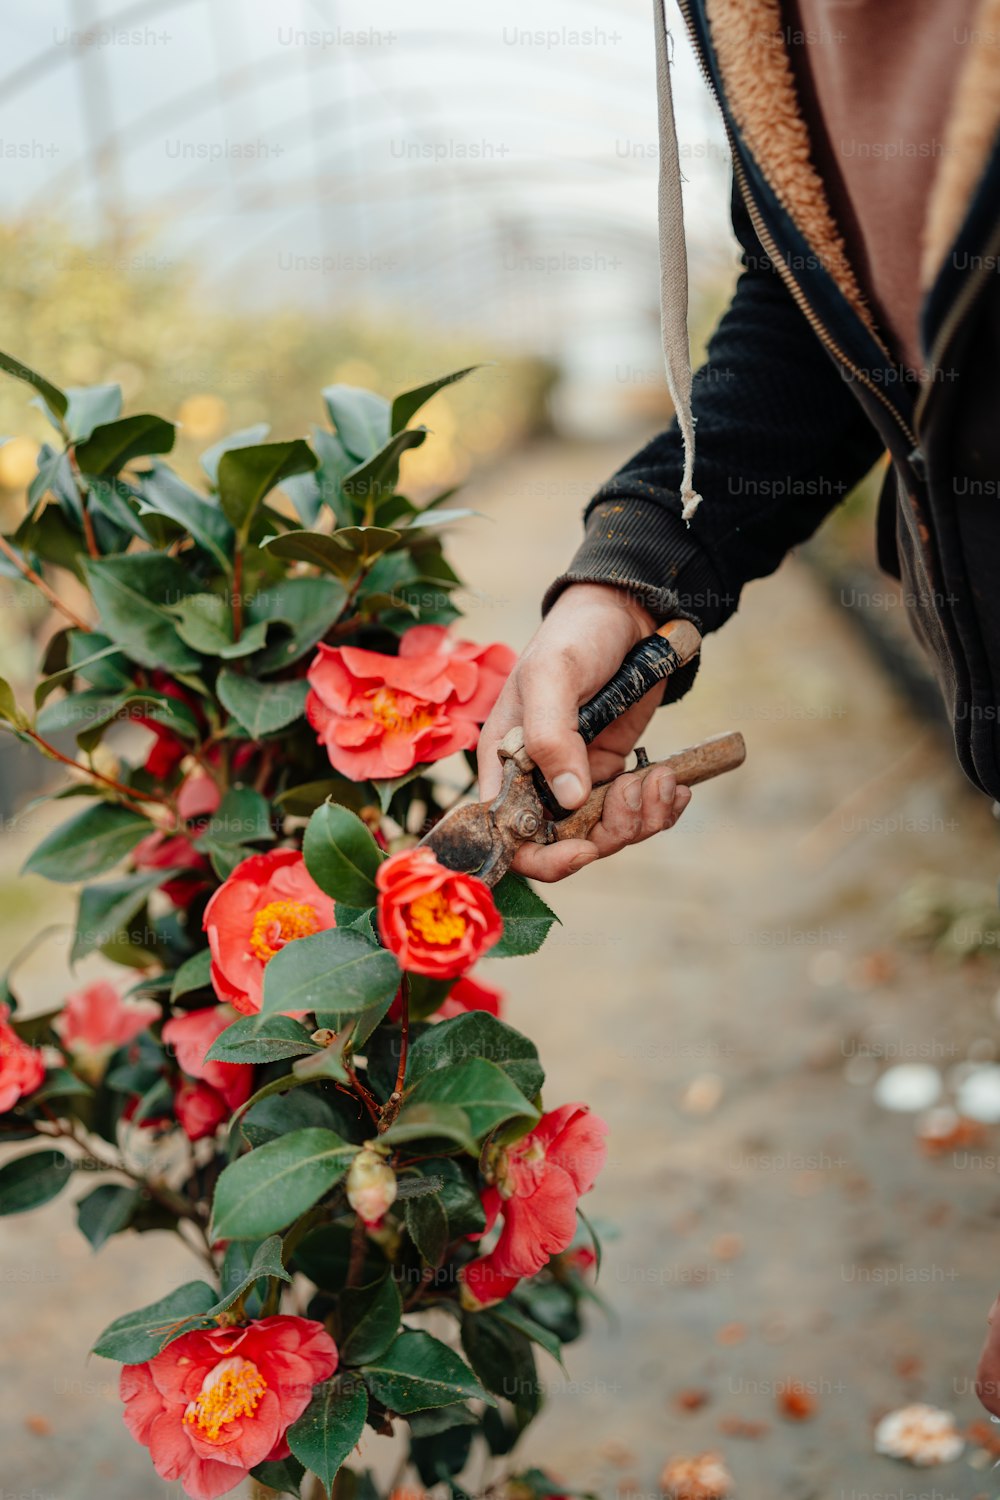 uma pessoa segurando um cachimbo e um ramo de flores